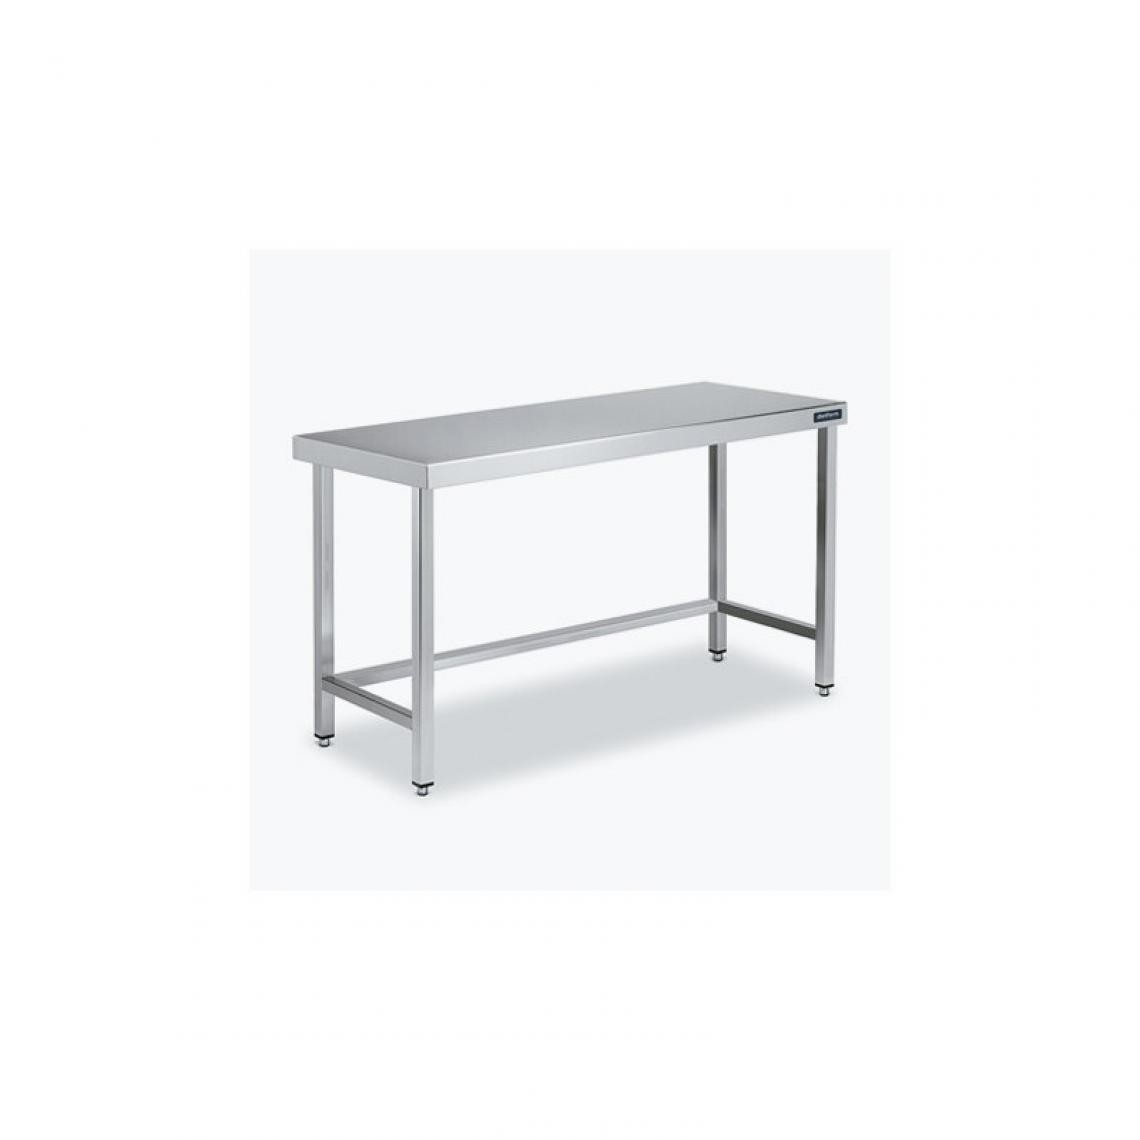 DISTFORM - Table Centrale 600x700 avec Renforts - Distform - Inox 18/10600x700x850mm - Tables à manger